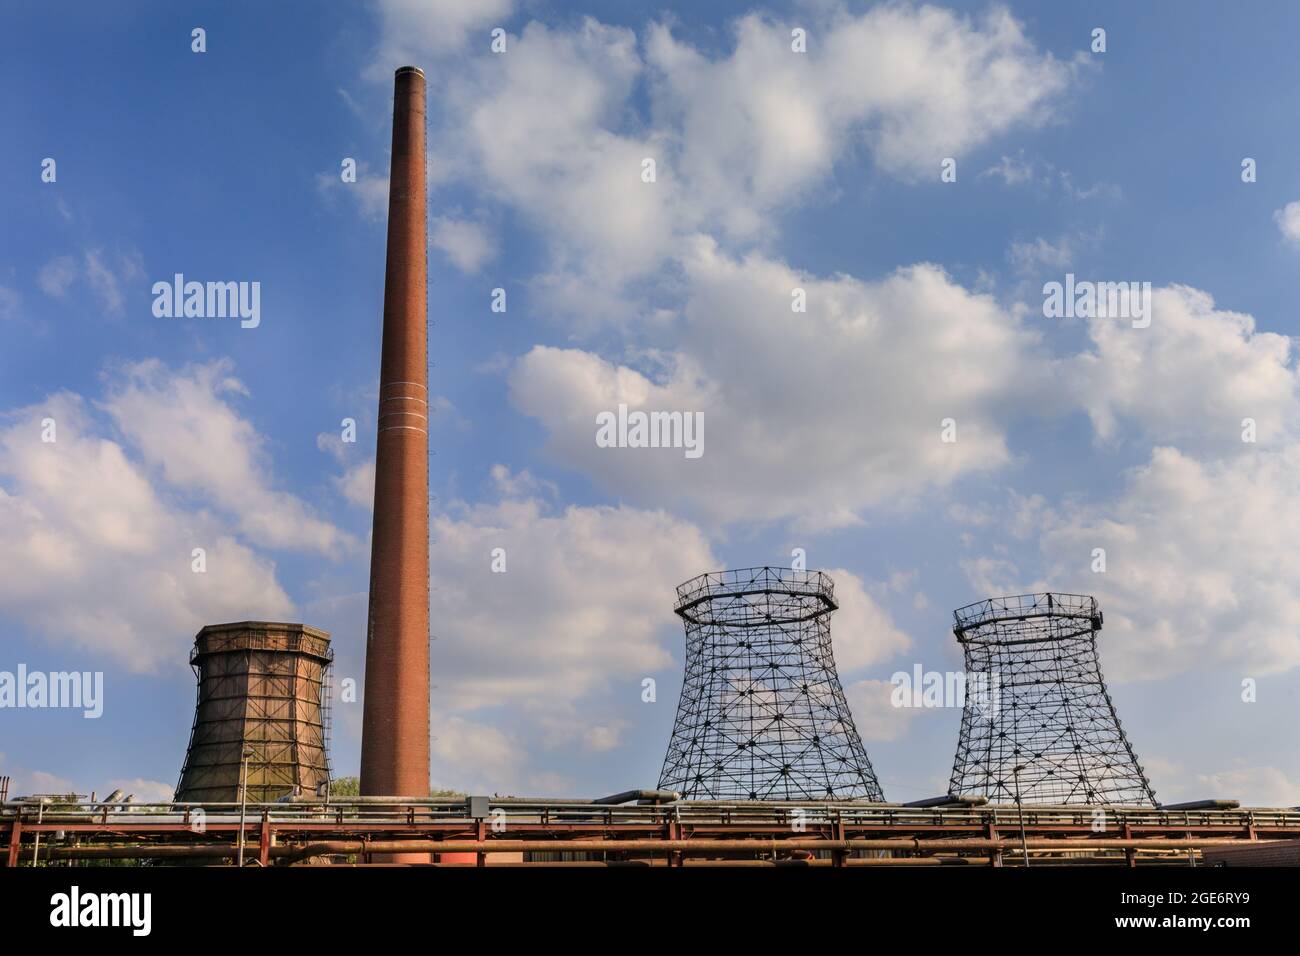 Les détenteurs de gaz et la cheminée industrielle , le complexe industriel de la mine de charbon Zeche Zollverein, site classé au patrimoine mondial de l'UNESCO, région de la Ruhr, Essen, Allemagne Banque D'Images